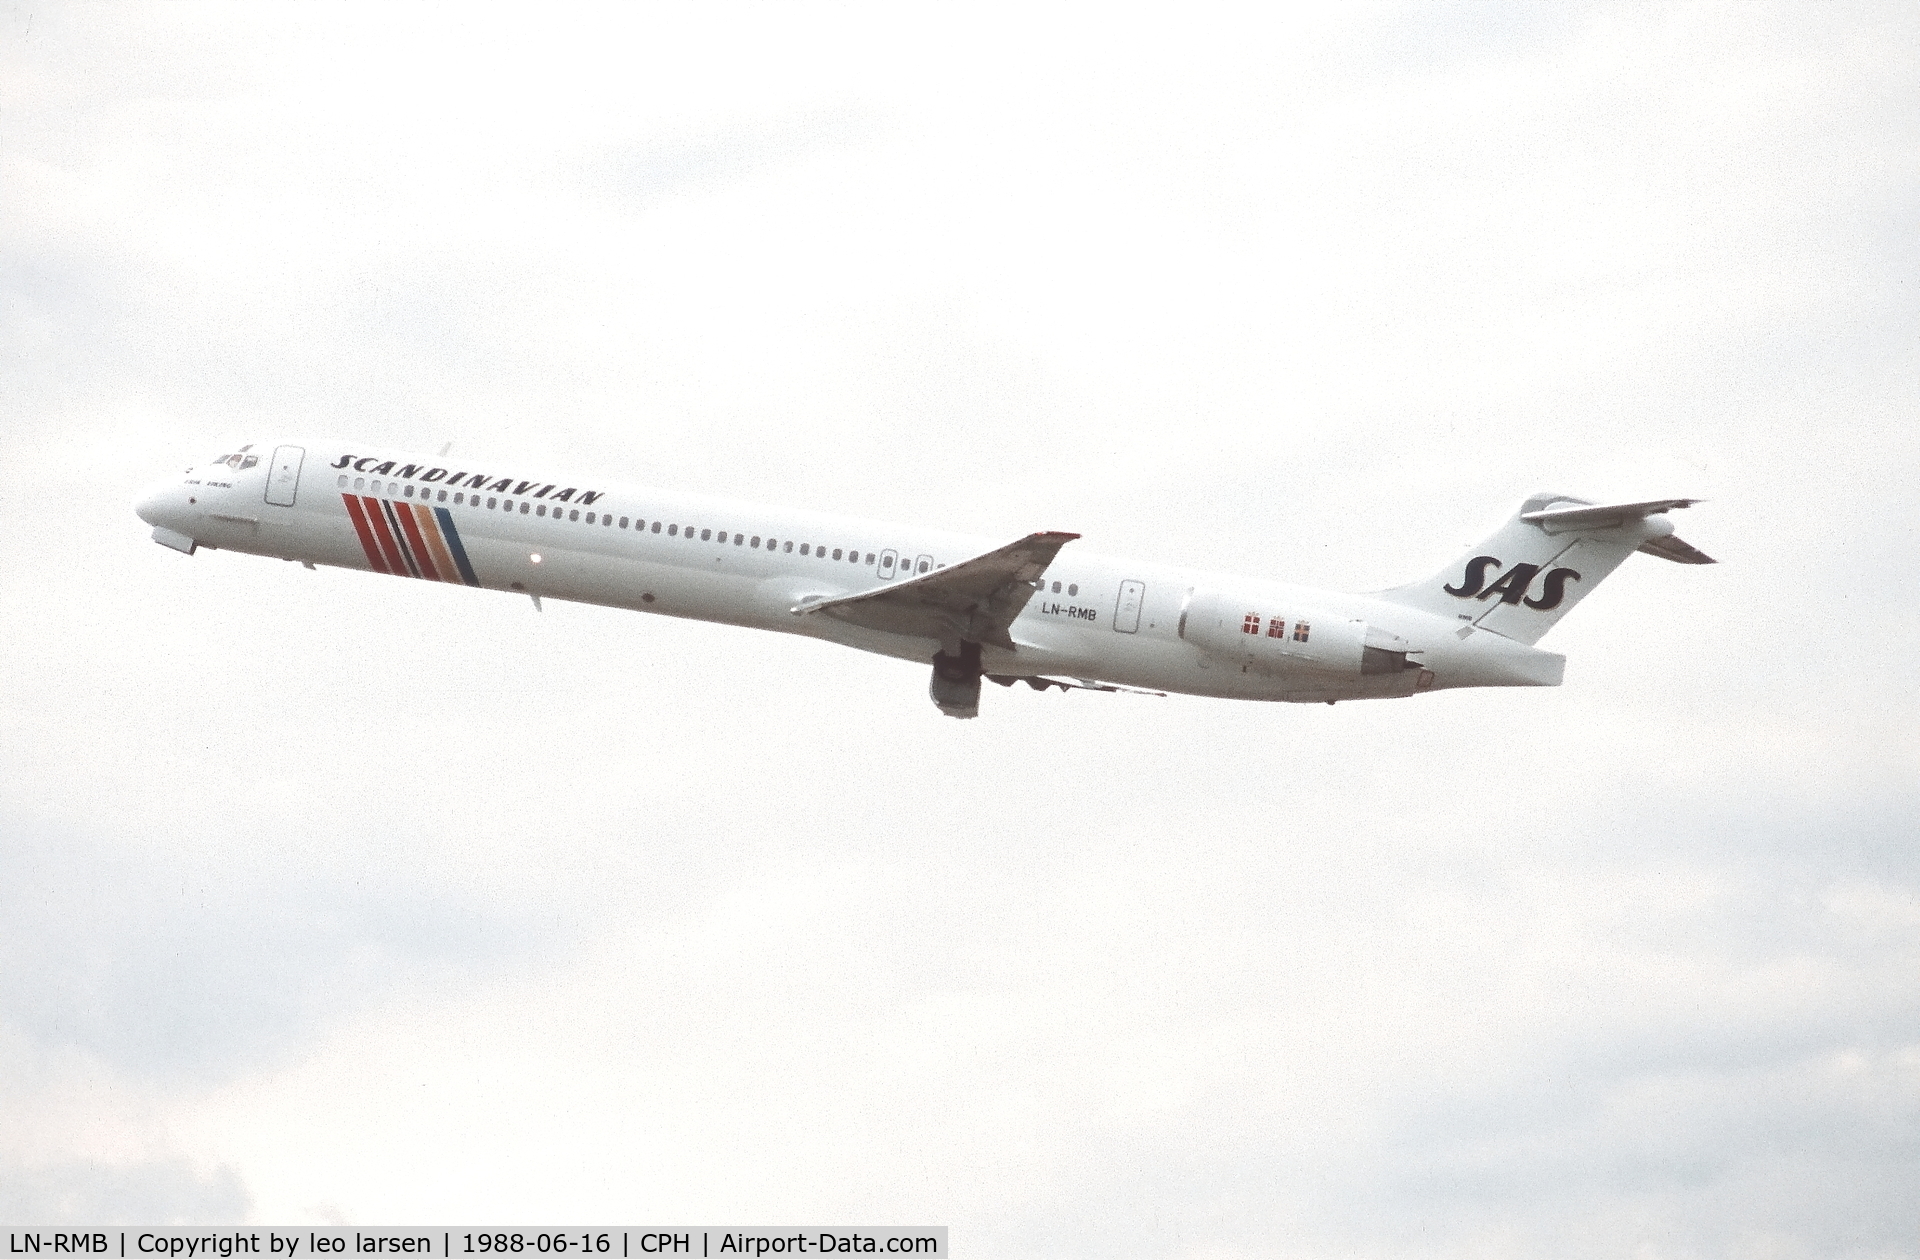 LN-RMB, 1987 McDonnell Douglas MD-83 (DC-9-83) C/N 49557, Copenhagen 15.6.1988